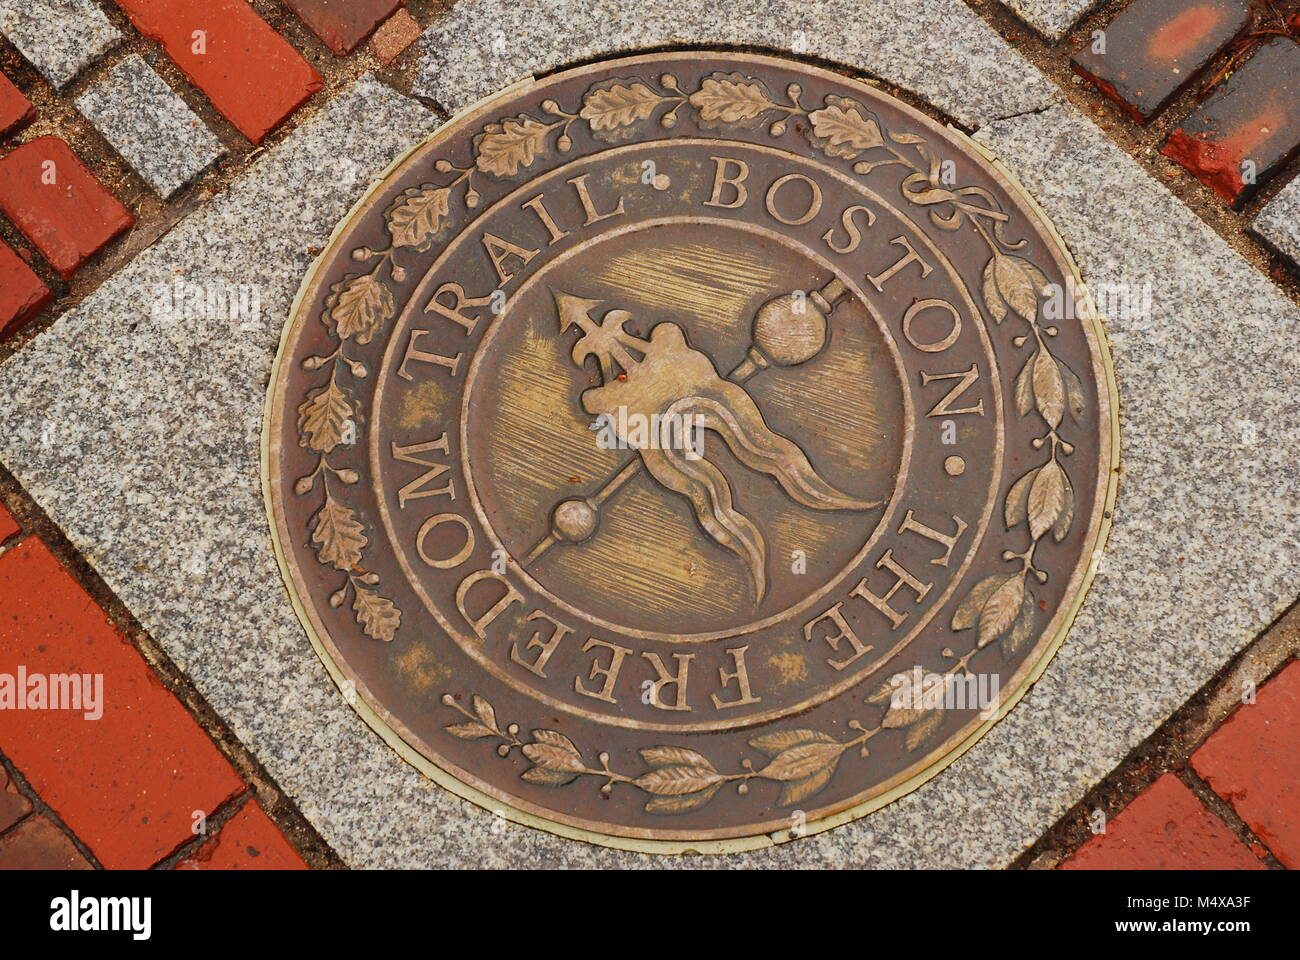 Ein Freedom Trail Marker können Reisende wissen Der 2 km Fußweg durch die historischen Stätten Bostons Stockfoto